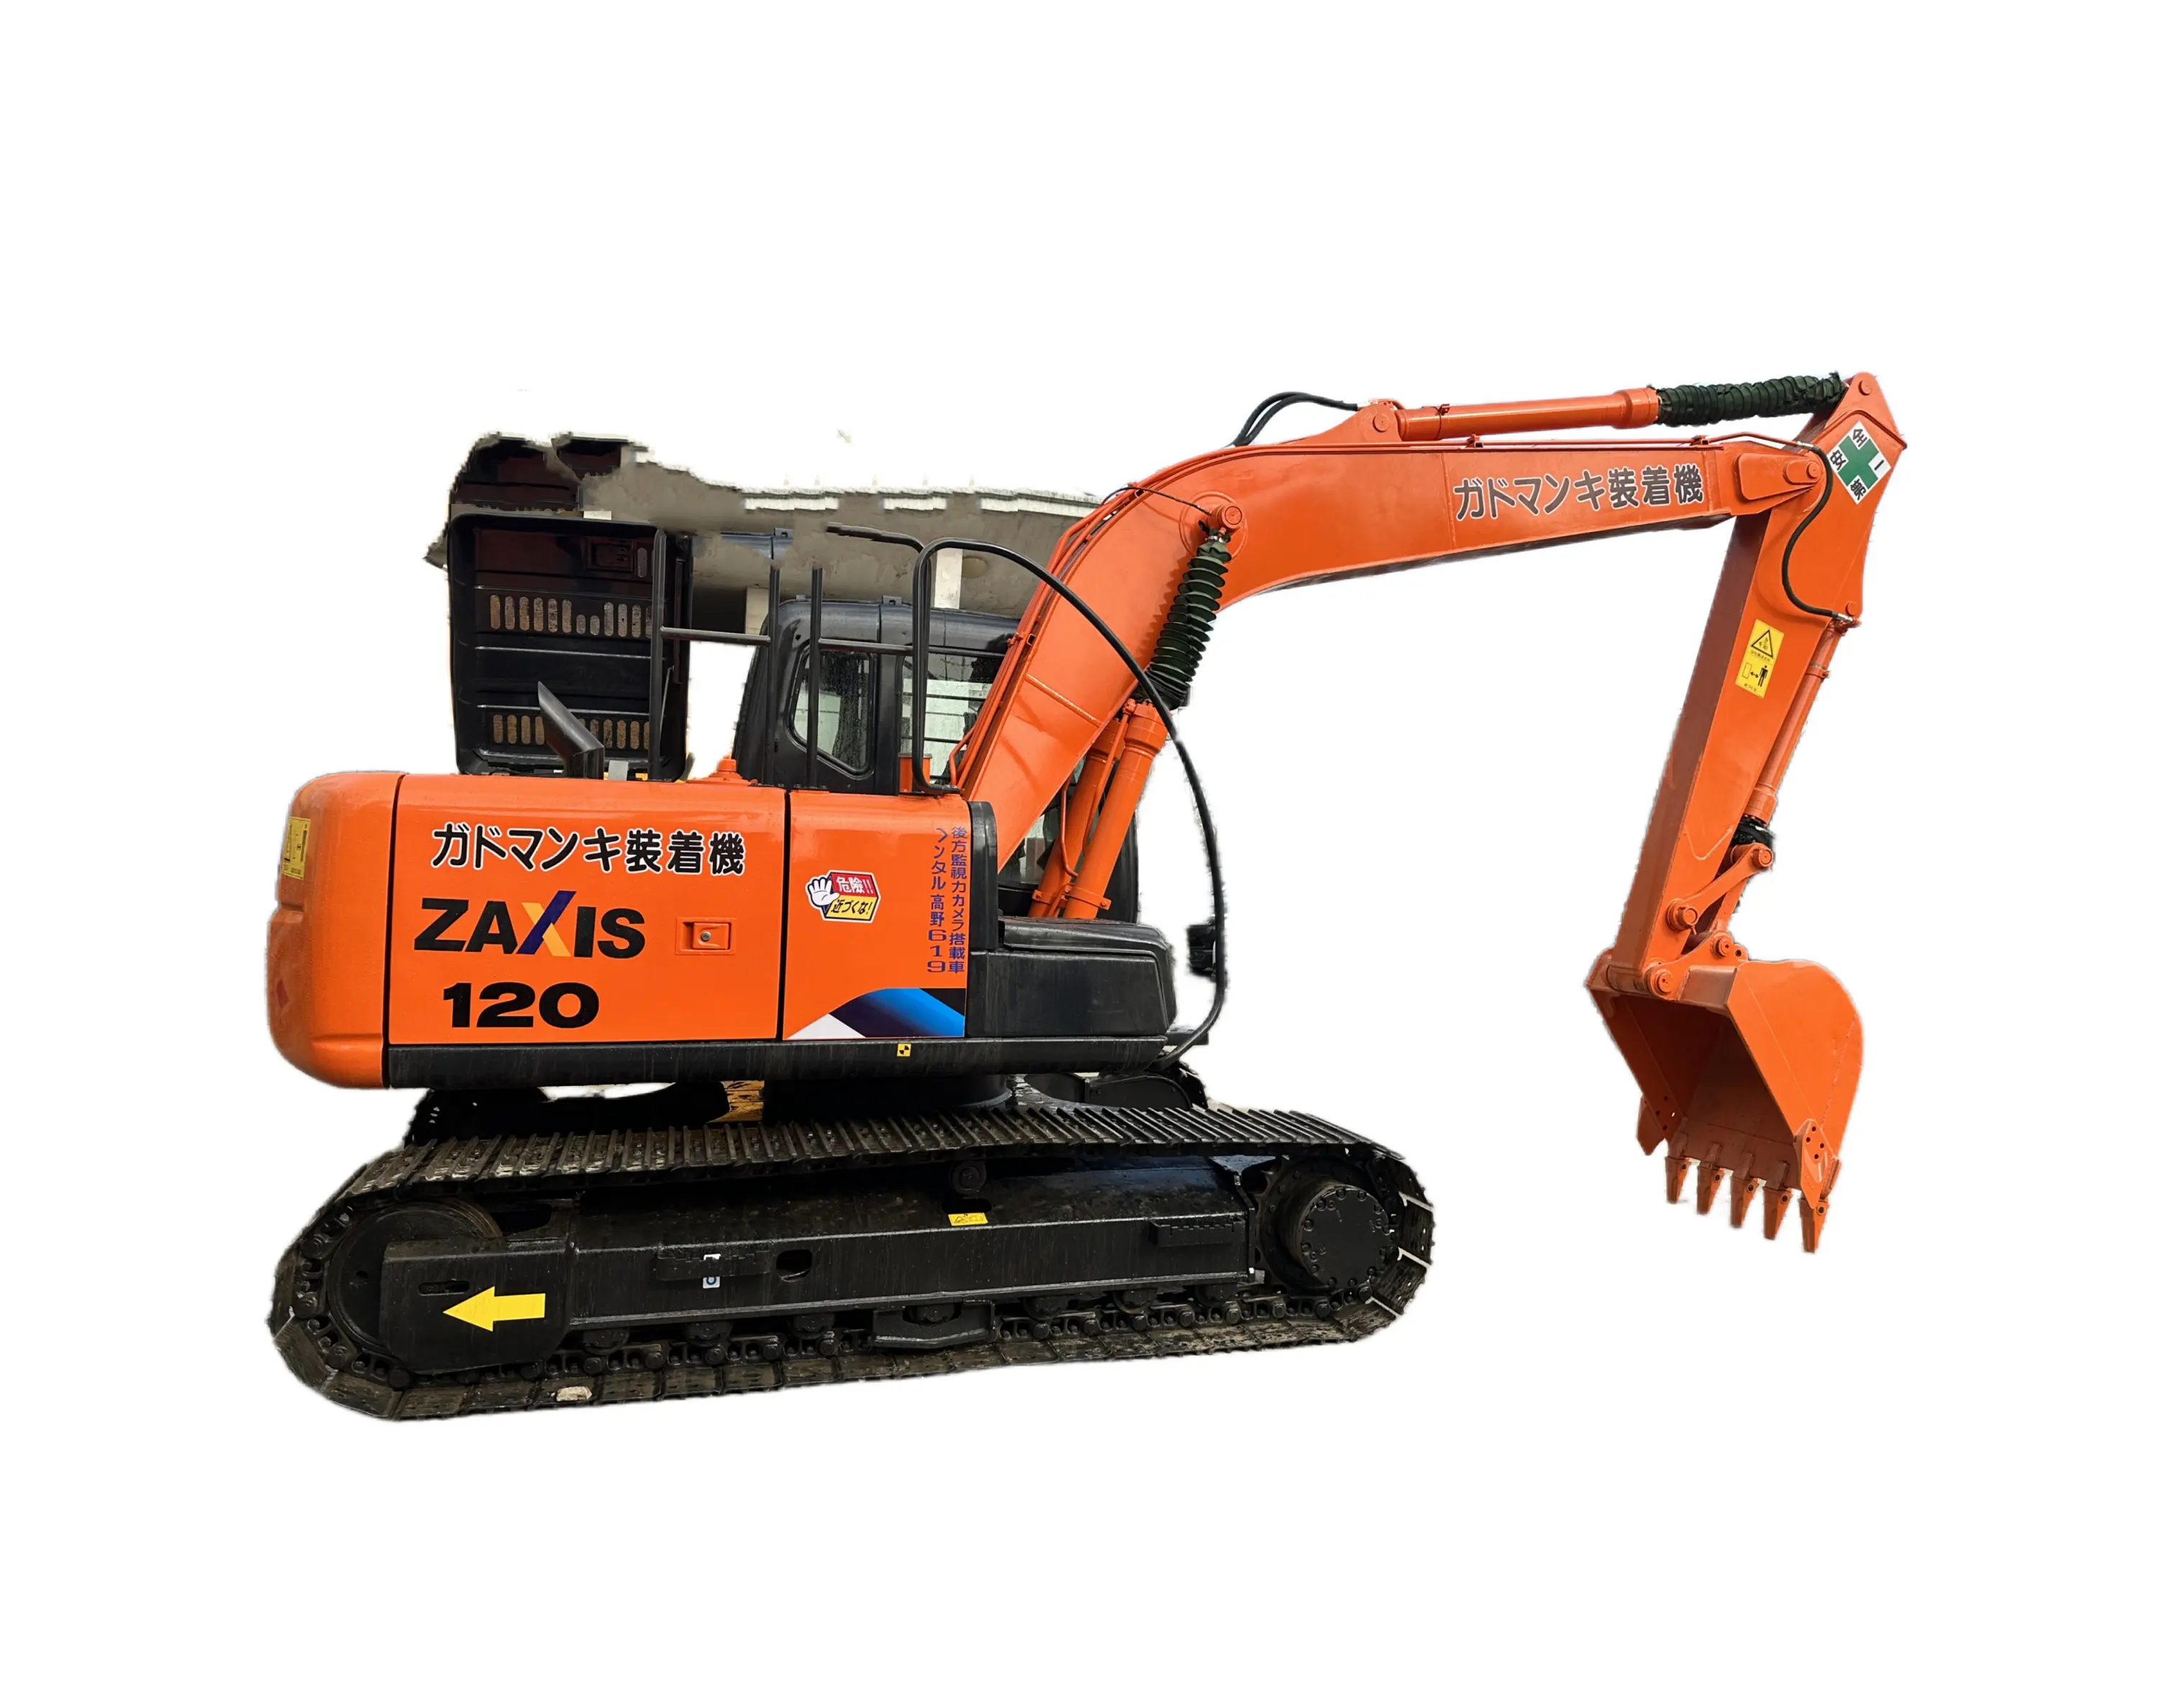 Usato Hitachi escavatore Zx120/ Hitachi Zx120-5 Zx120-6 usato escavatore di seconda mano 12 Ton escavatore per la vendita